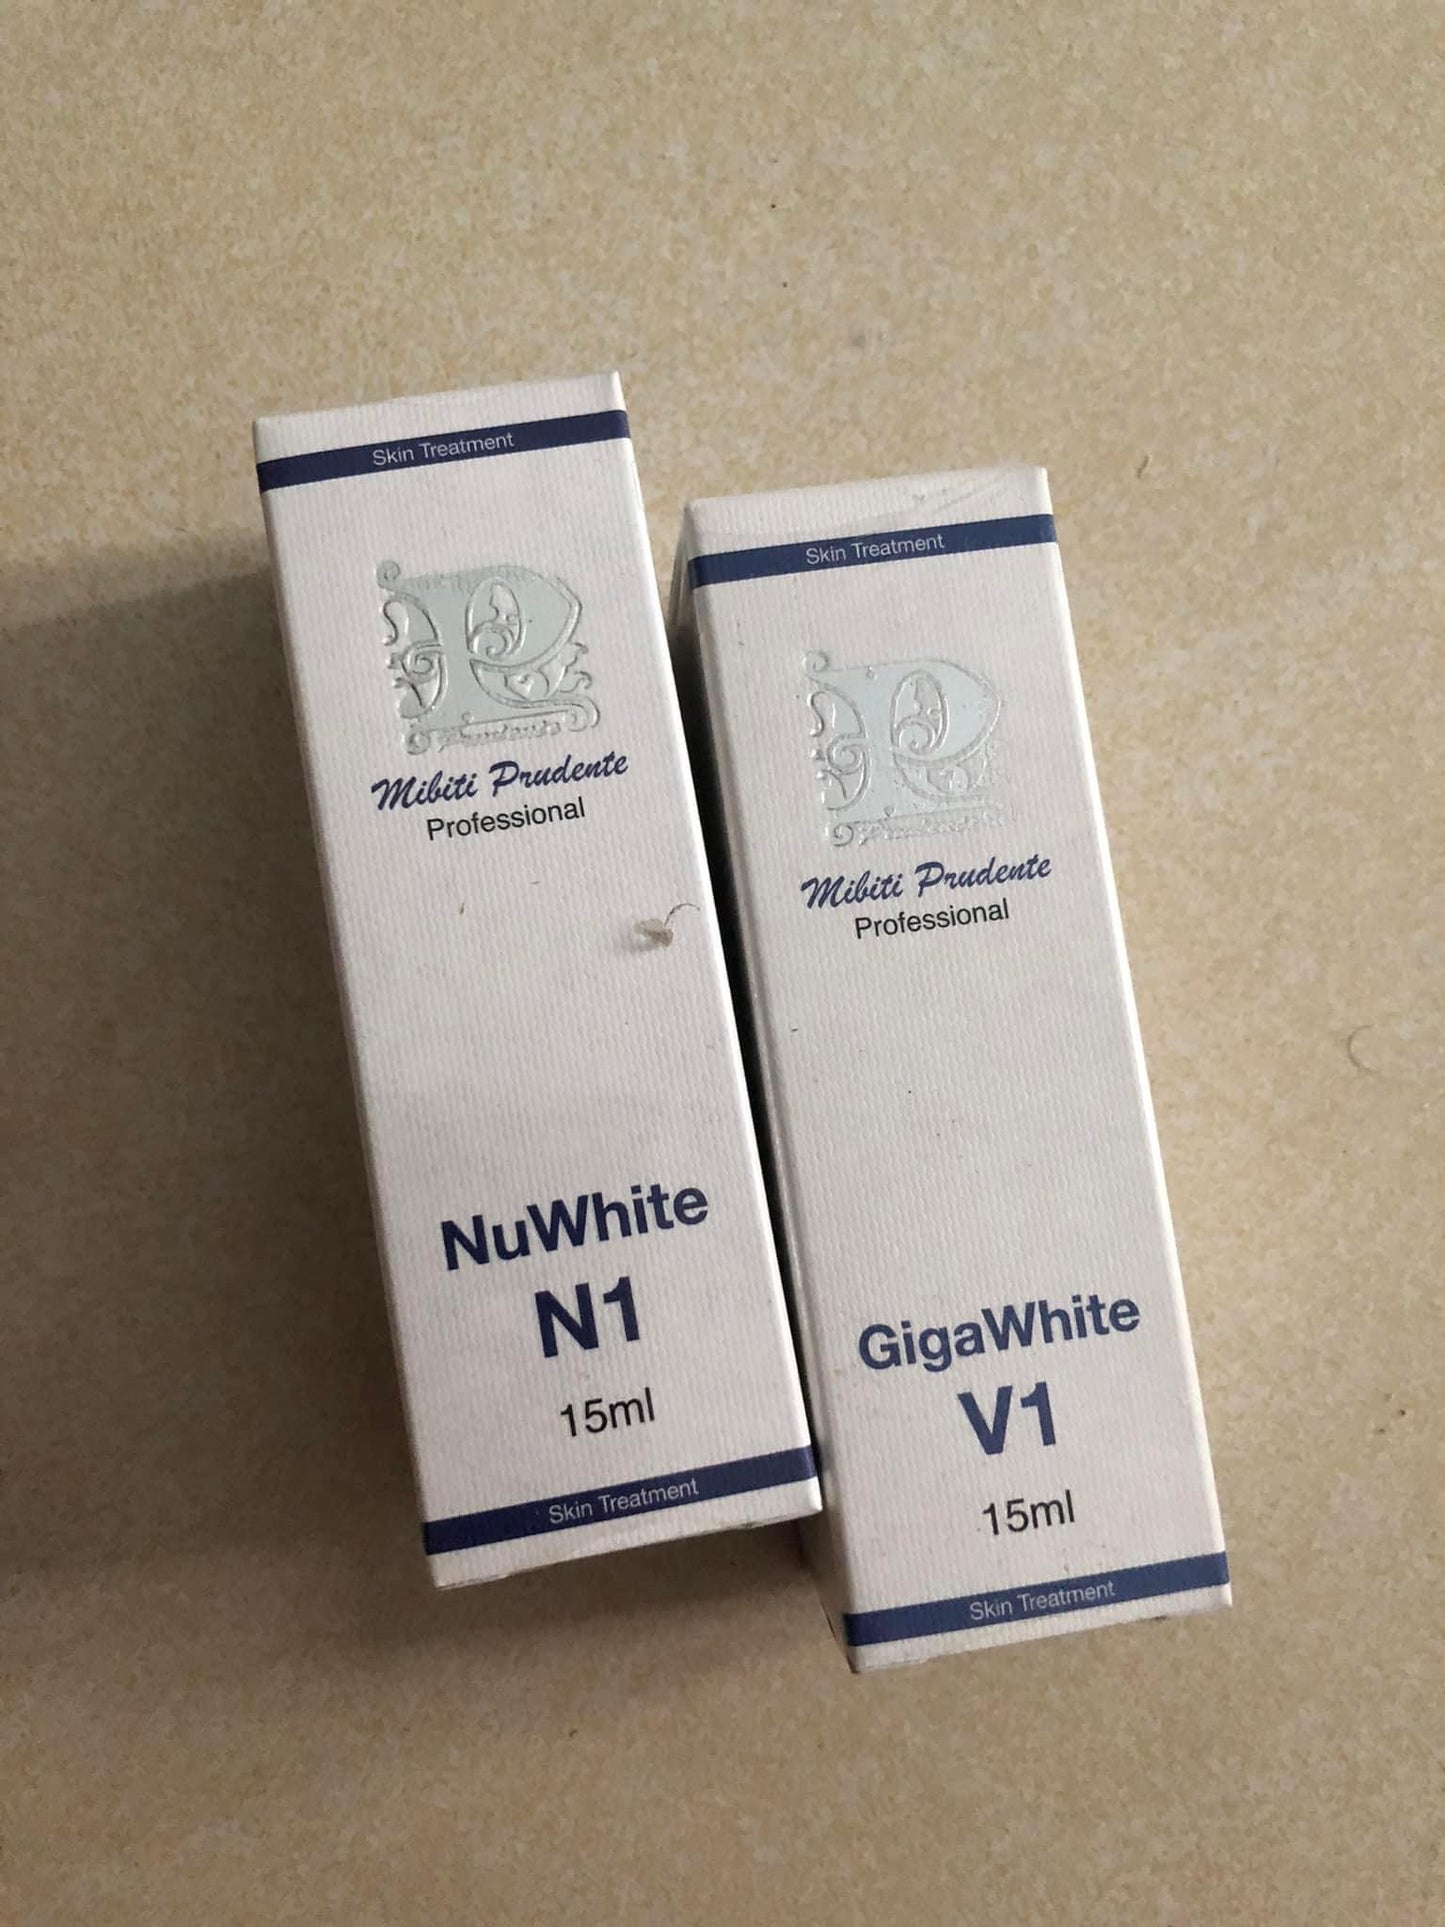 Nuwhite V1 (15ml)Gigawhite